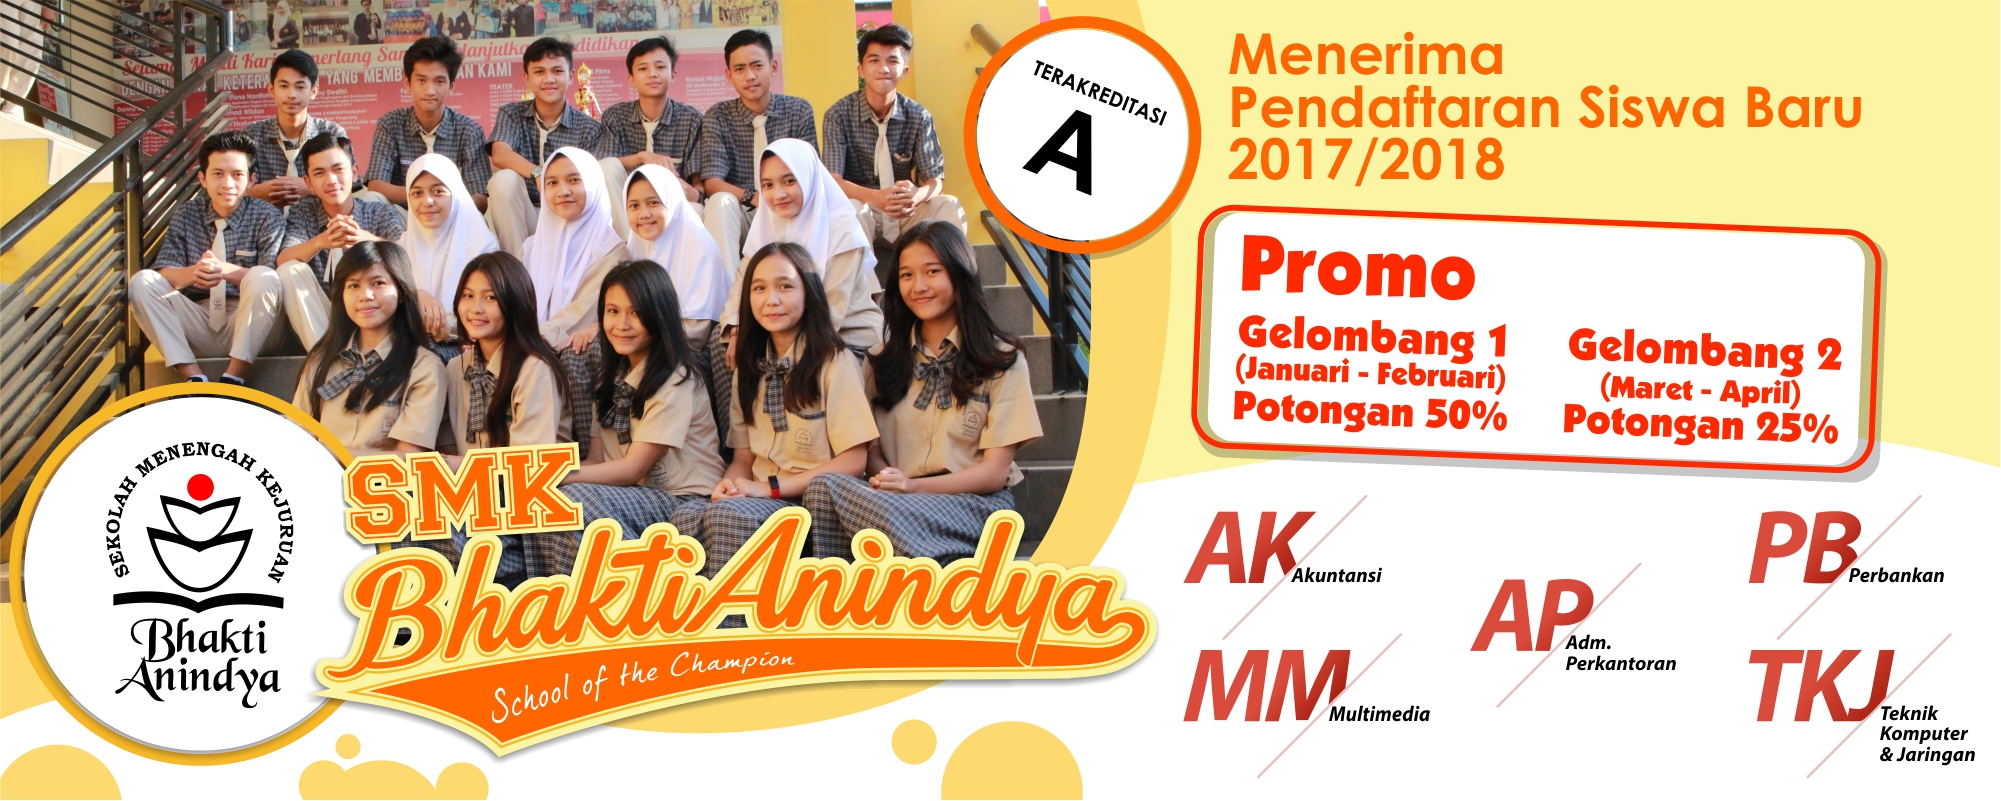 Penerimaan Siswa Baru SMK Bhakti Anindya Tangerang 2017/2018